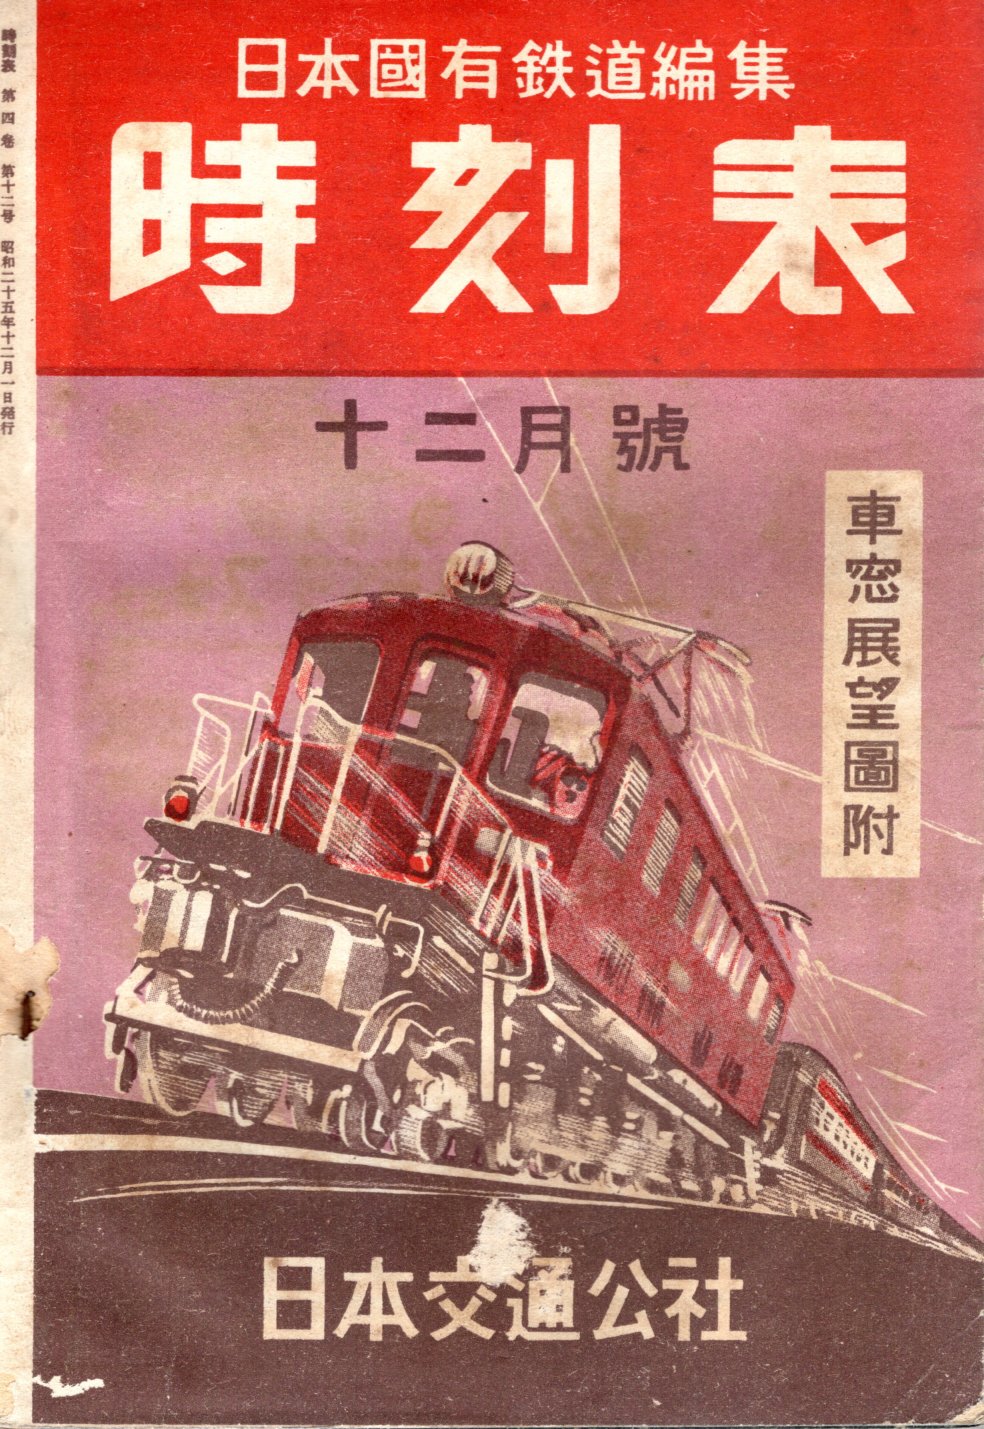 JTB時刻表1950年12月号